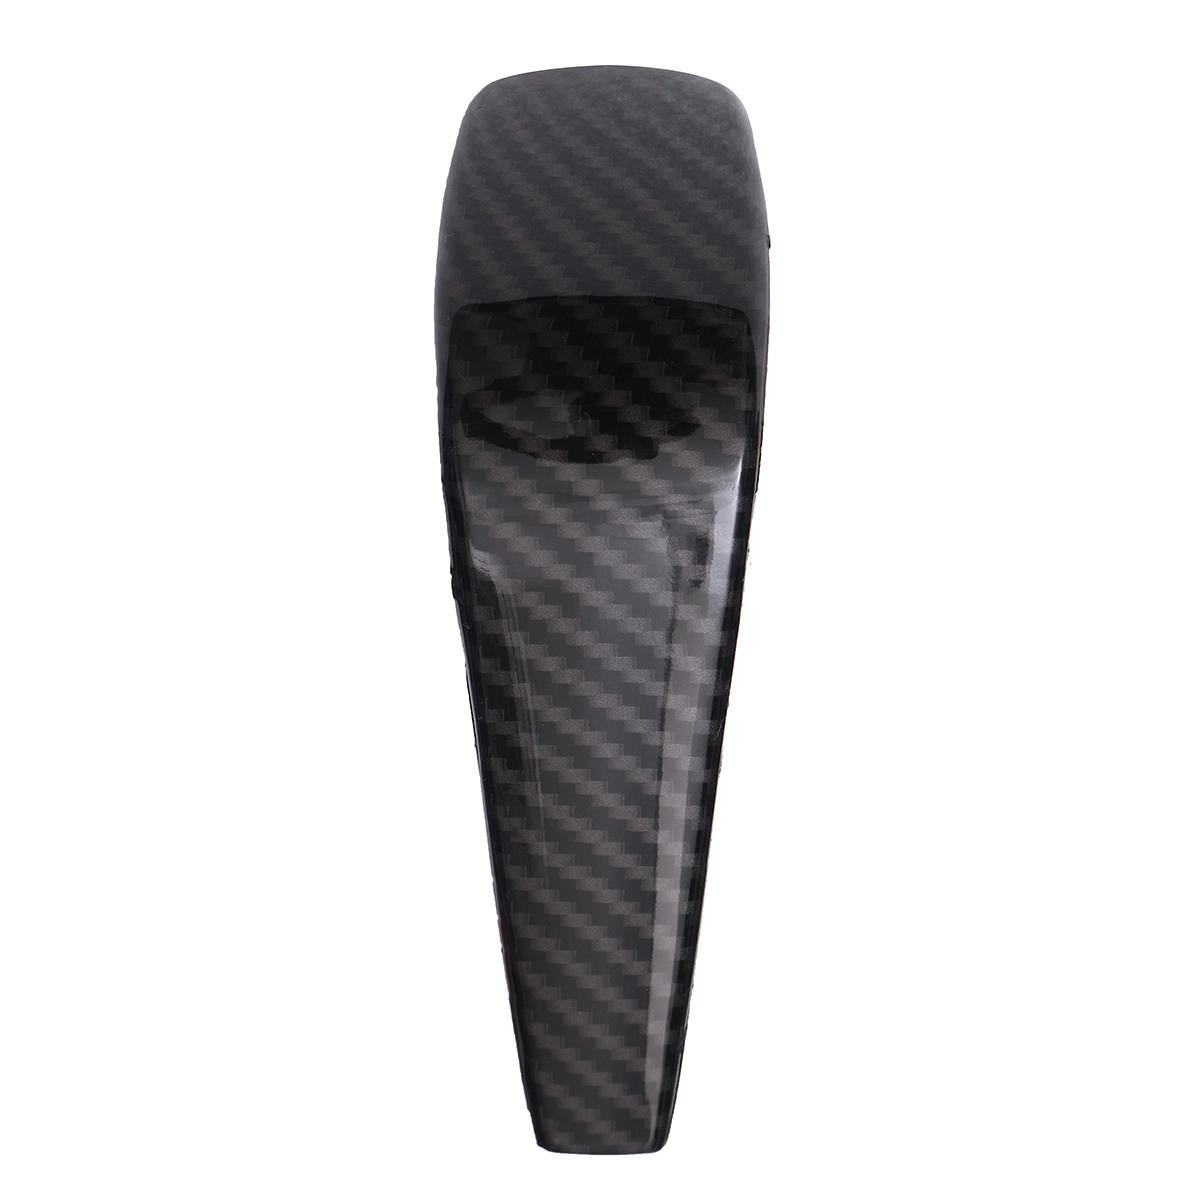 Carbon Fiber Gear Shift Knob Head Cover For BMW 3 Series E90 E91 E92 E93